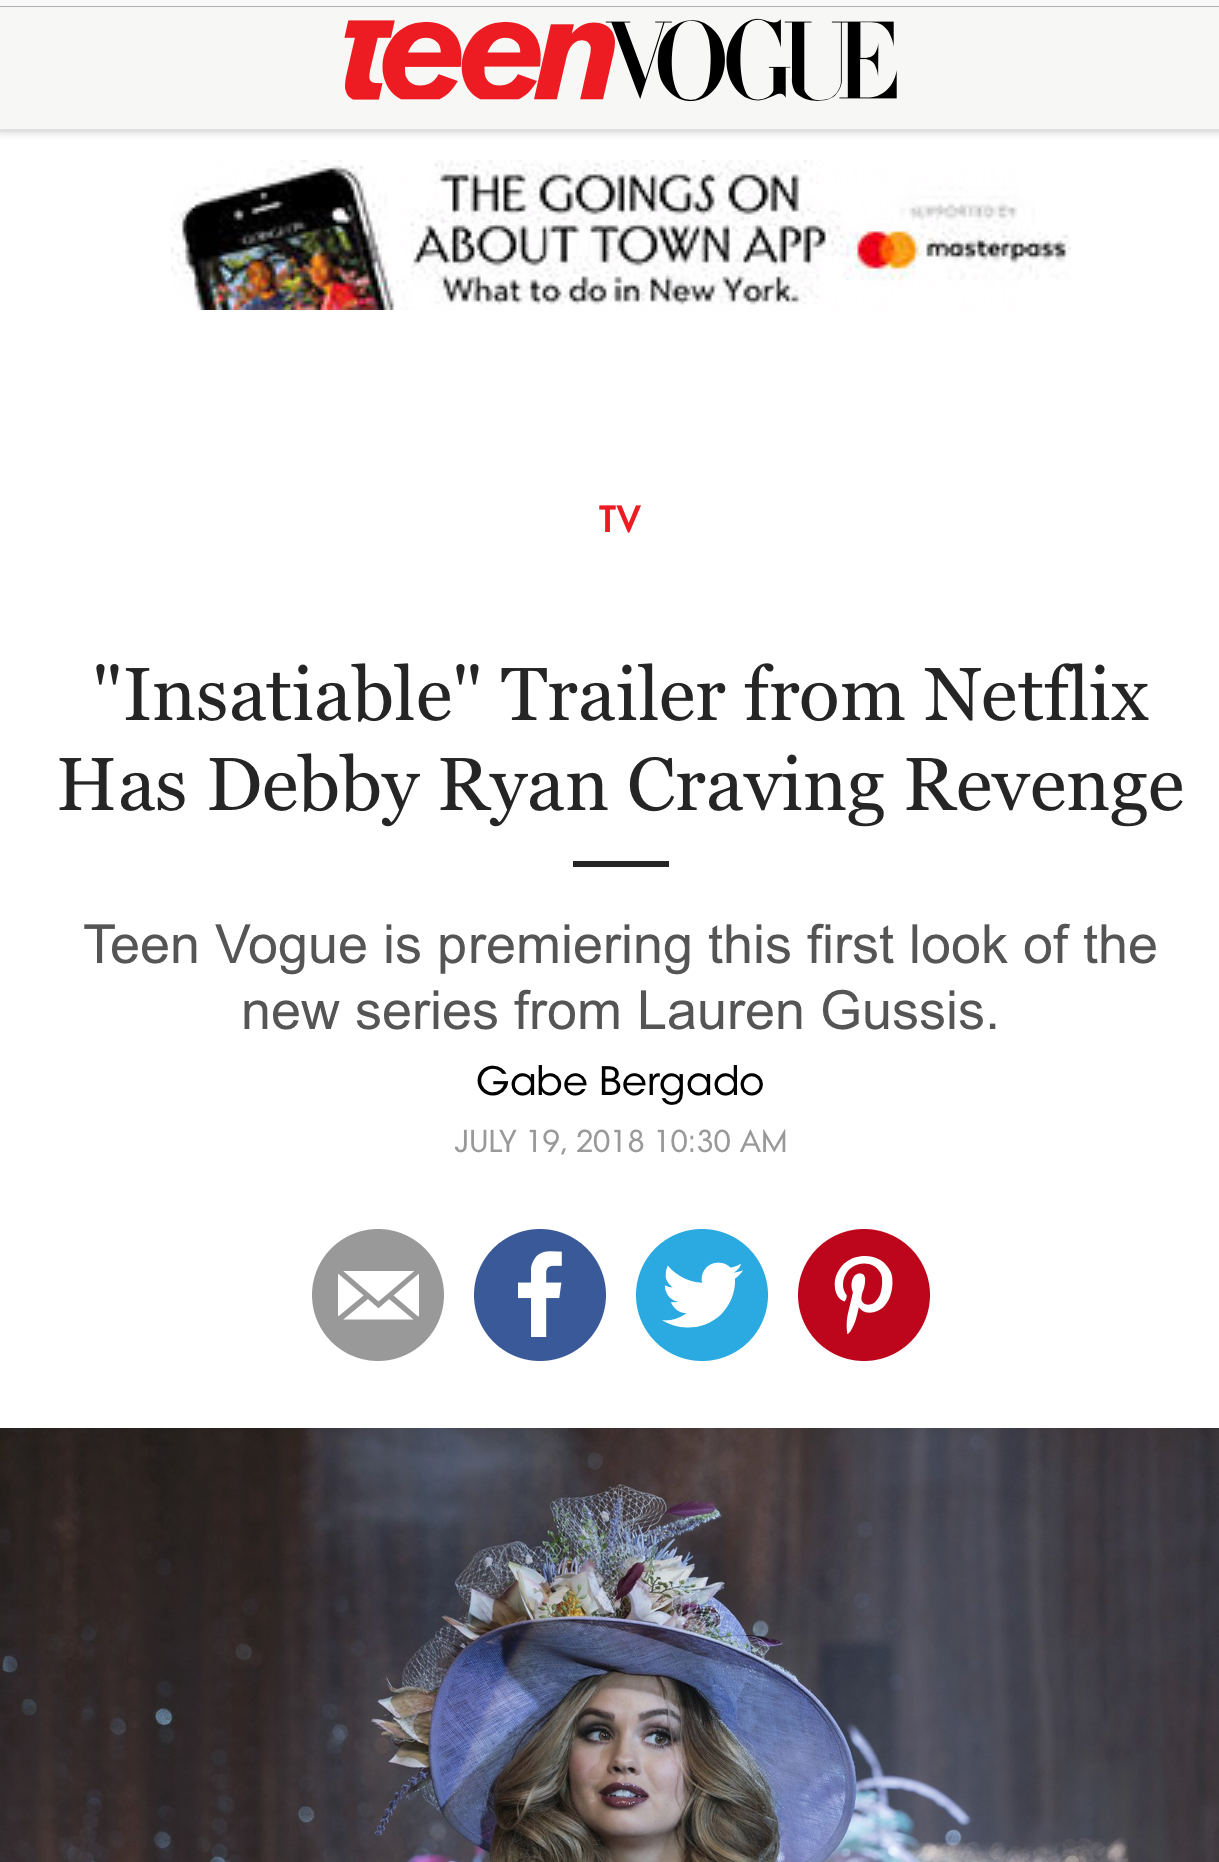 Tenn Vogue promotes Netflix's Insatiable